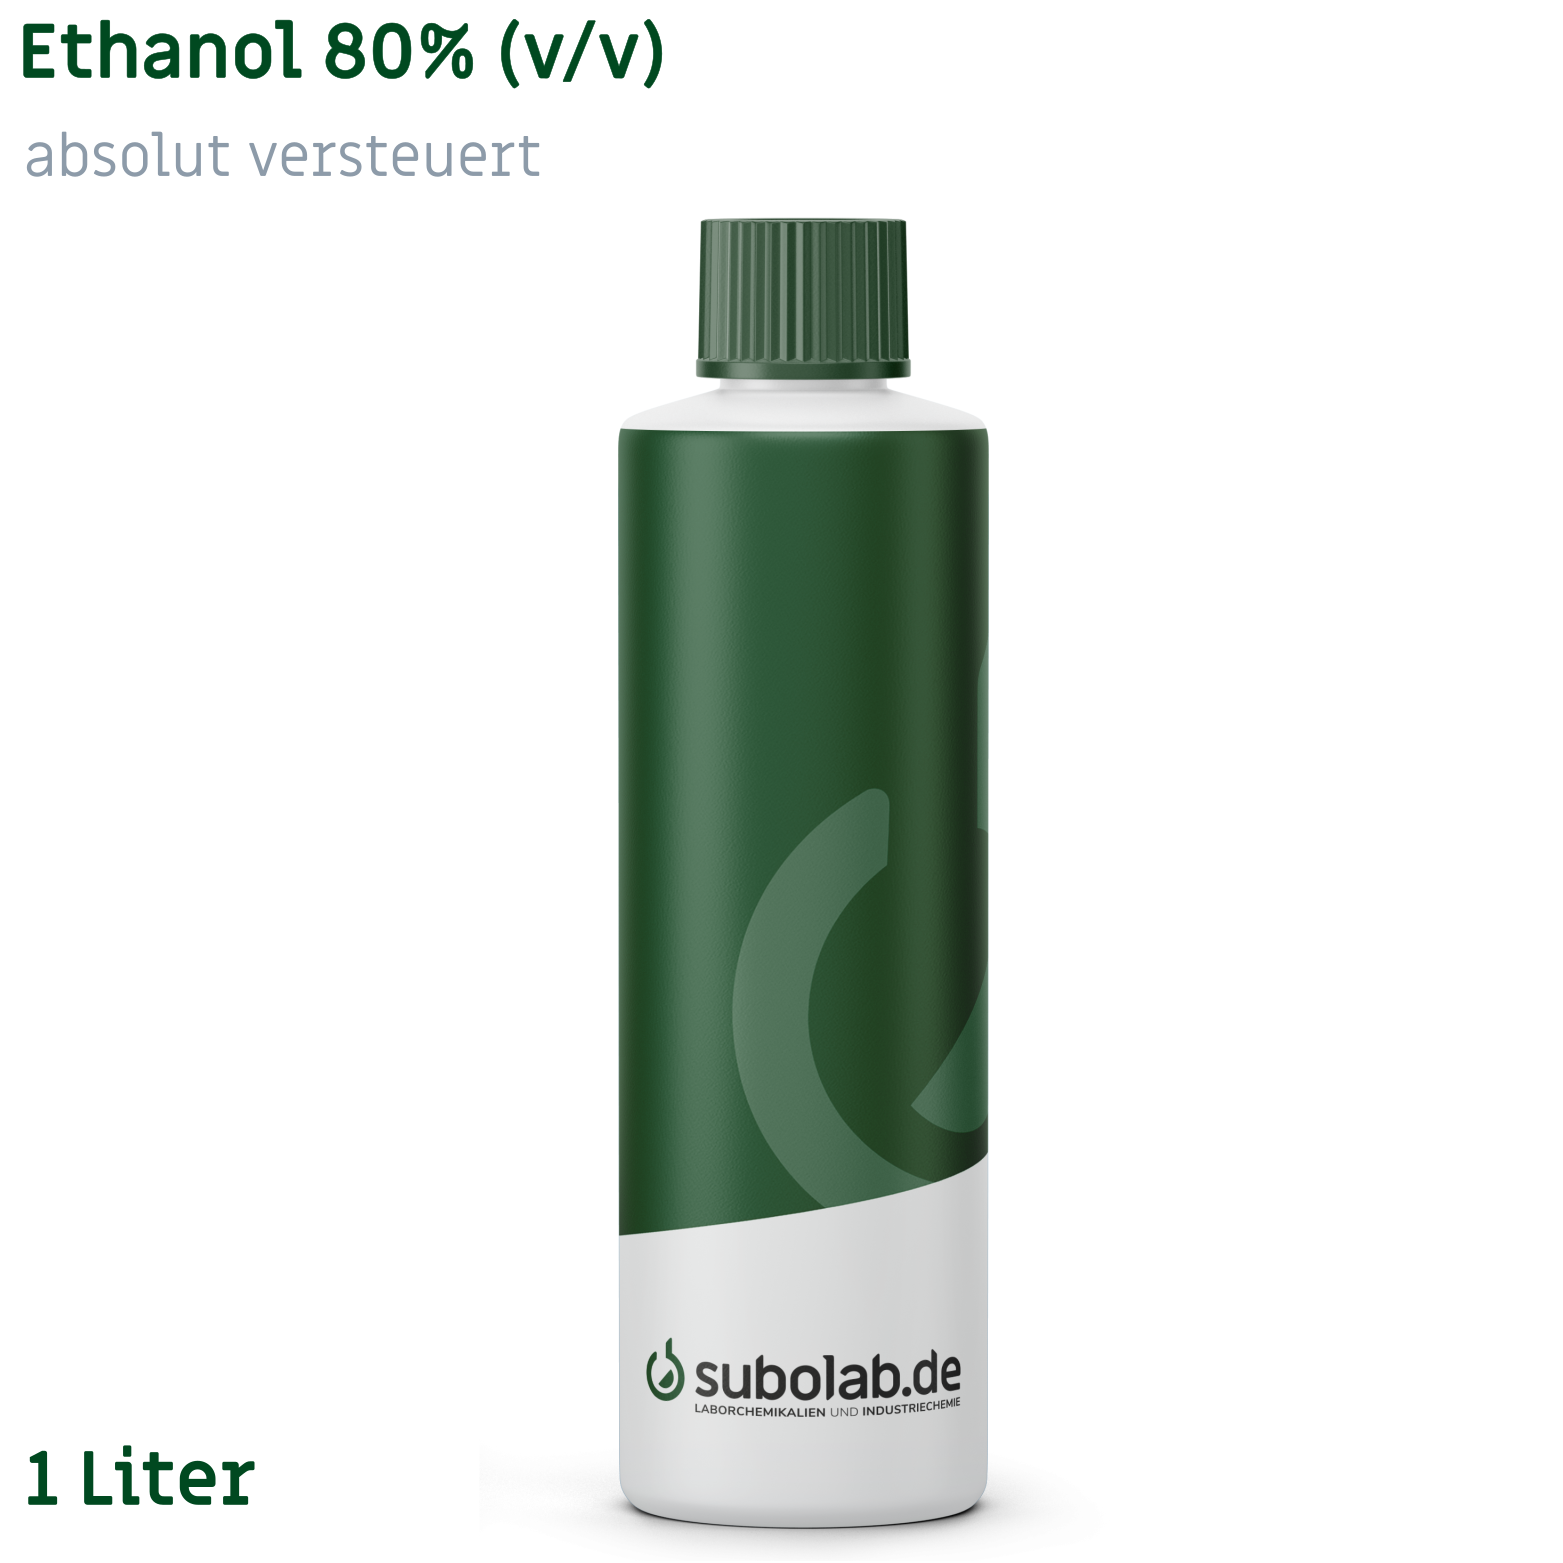 Bild von Ethanol 80% (v/v) absolut versteuert (1 Liter)